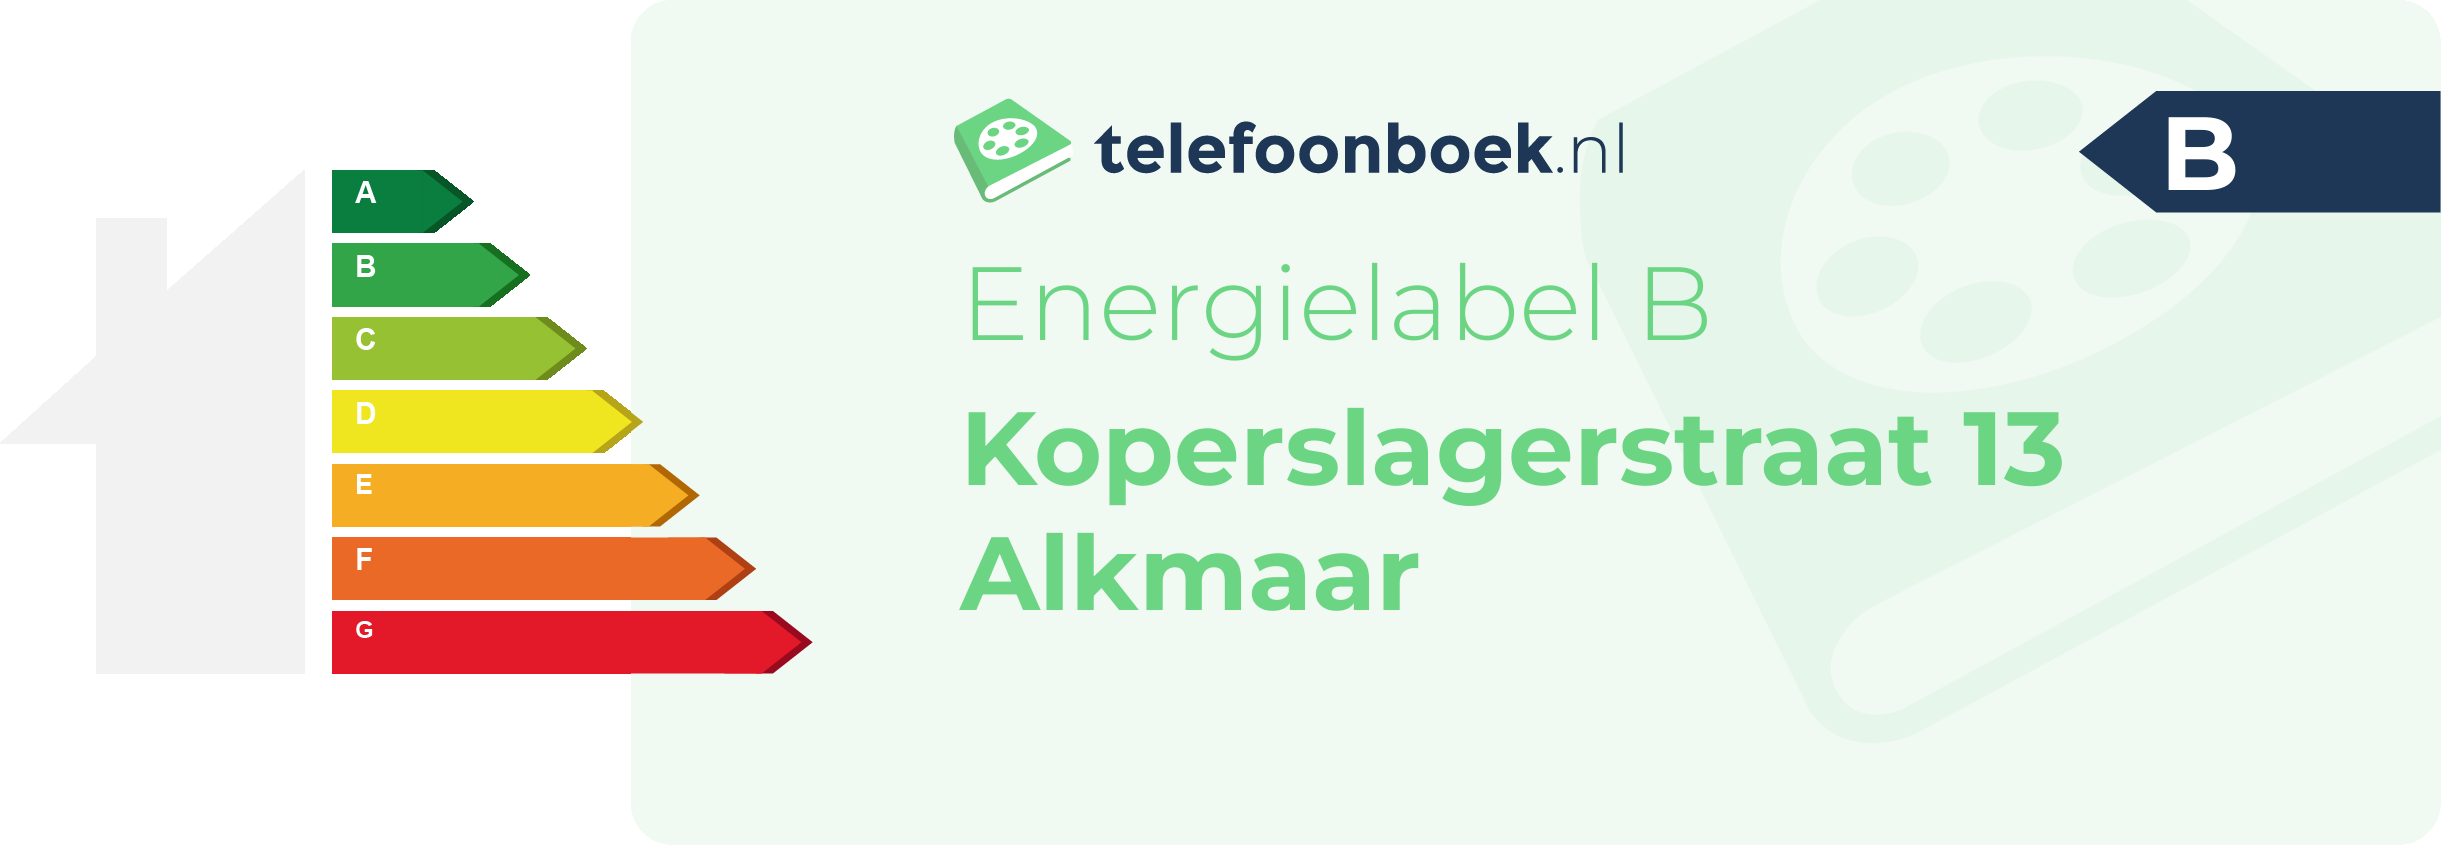 Energielabel Koperslagerstraat 13 Alkmaar